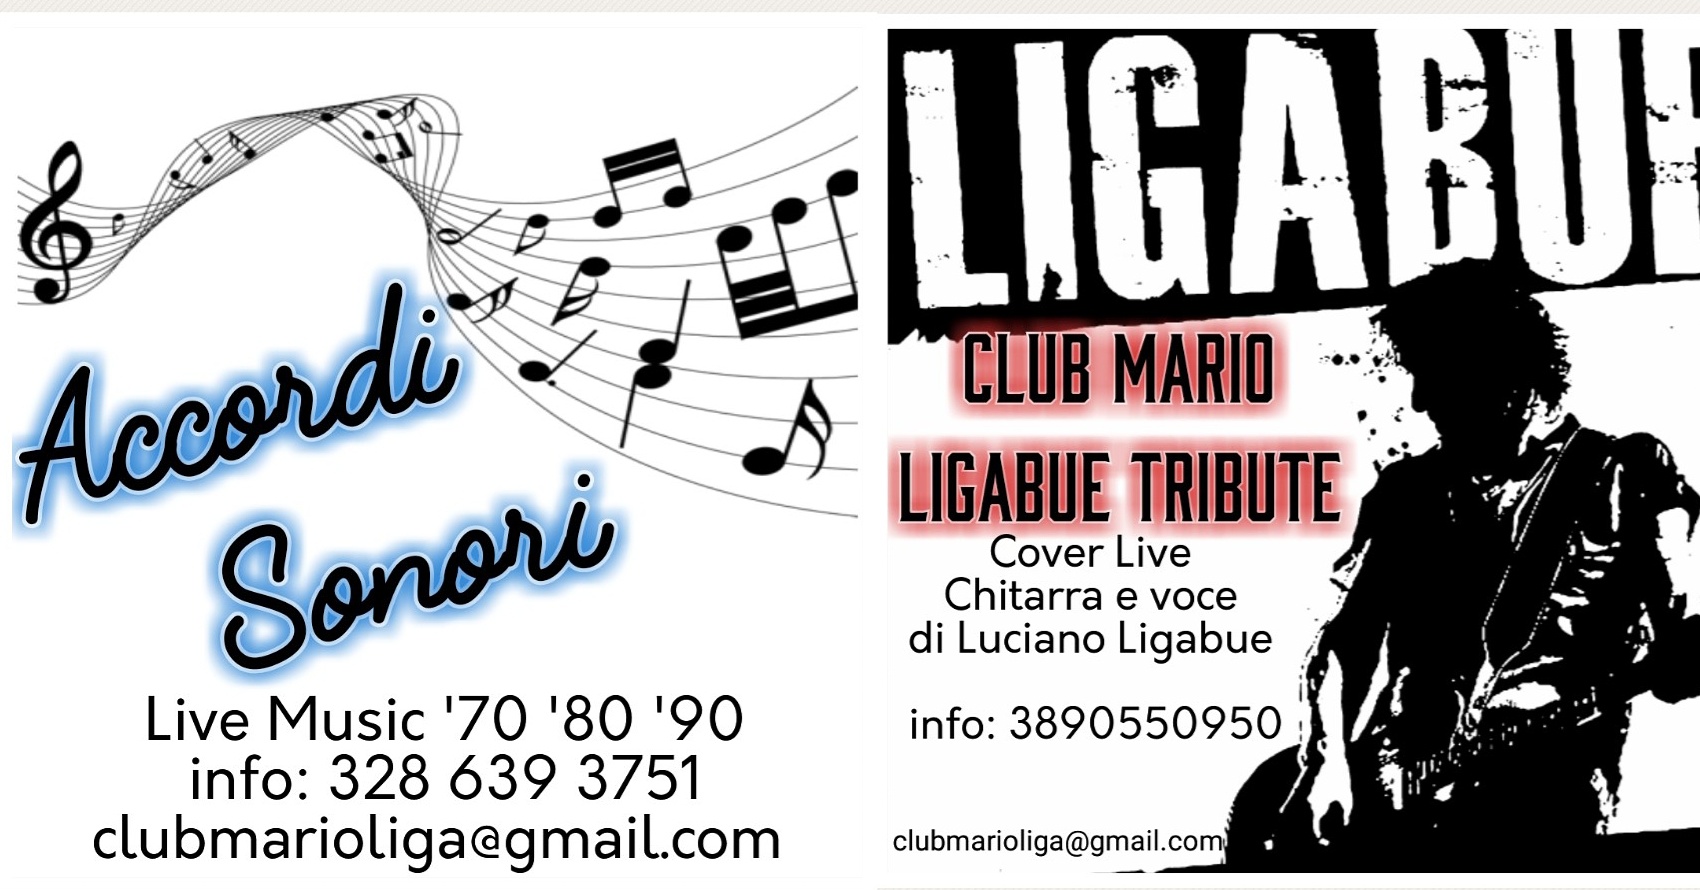 Club Mario Ligabue Tribute